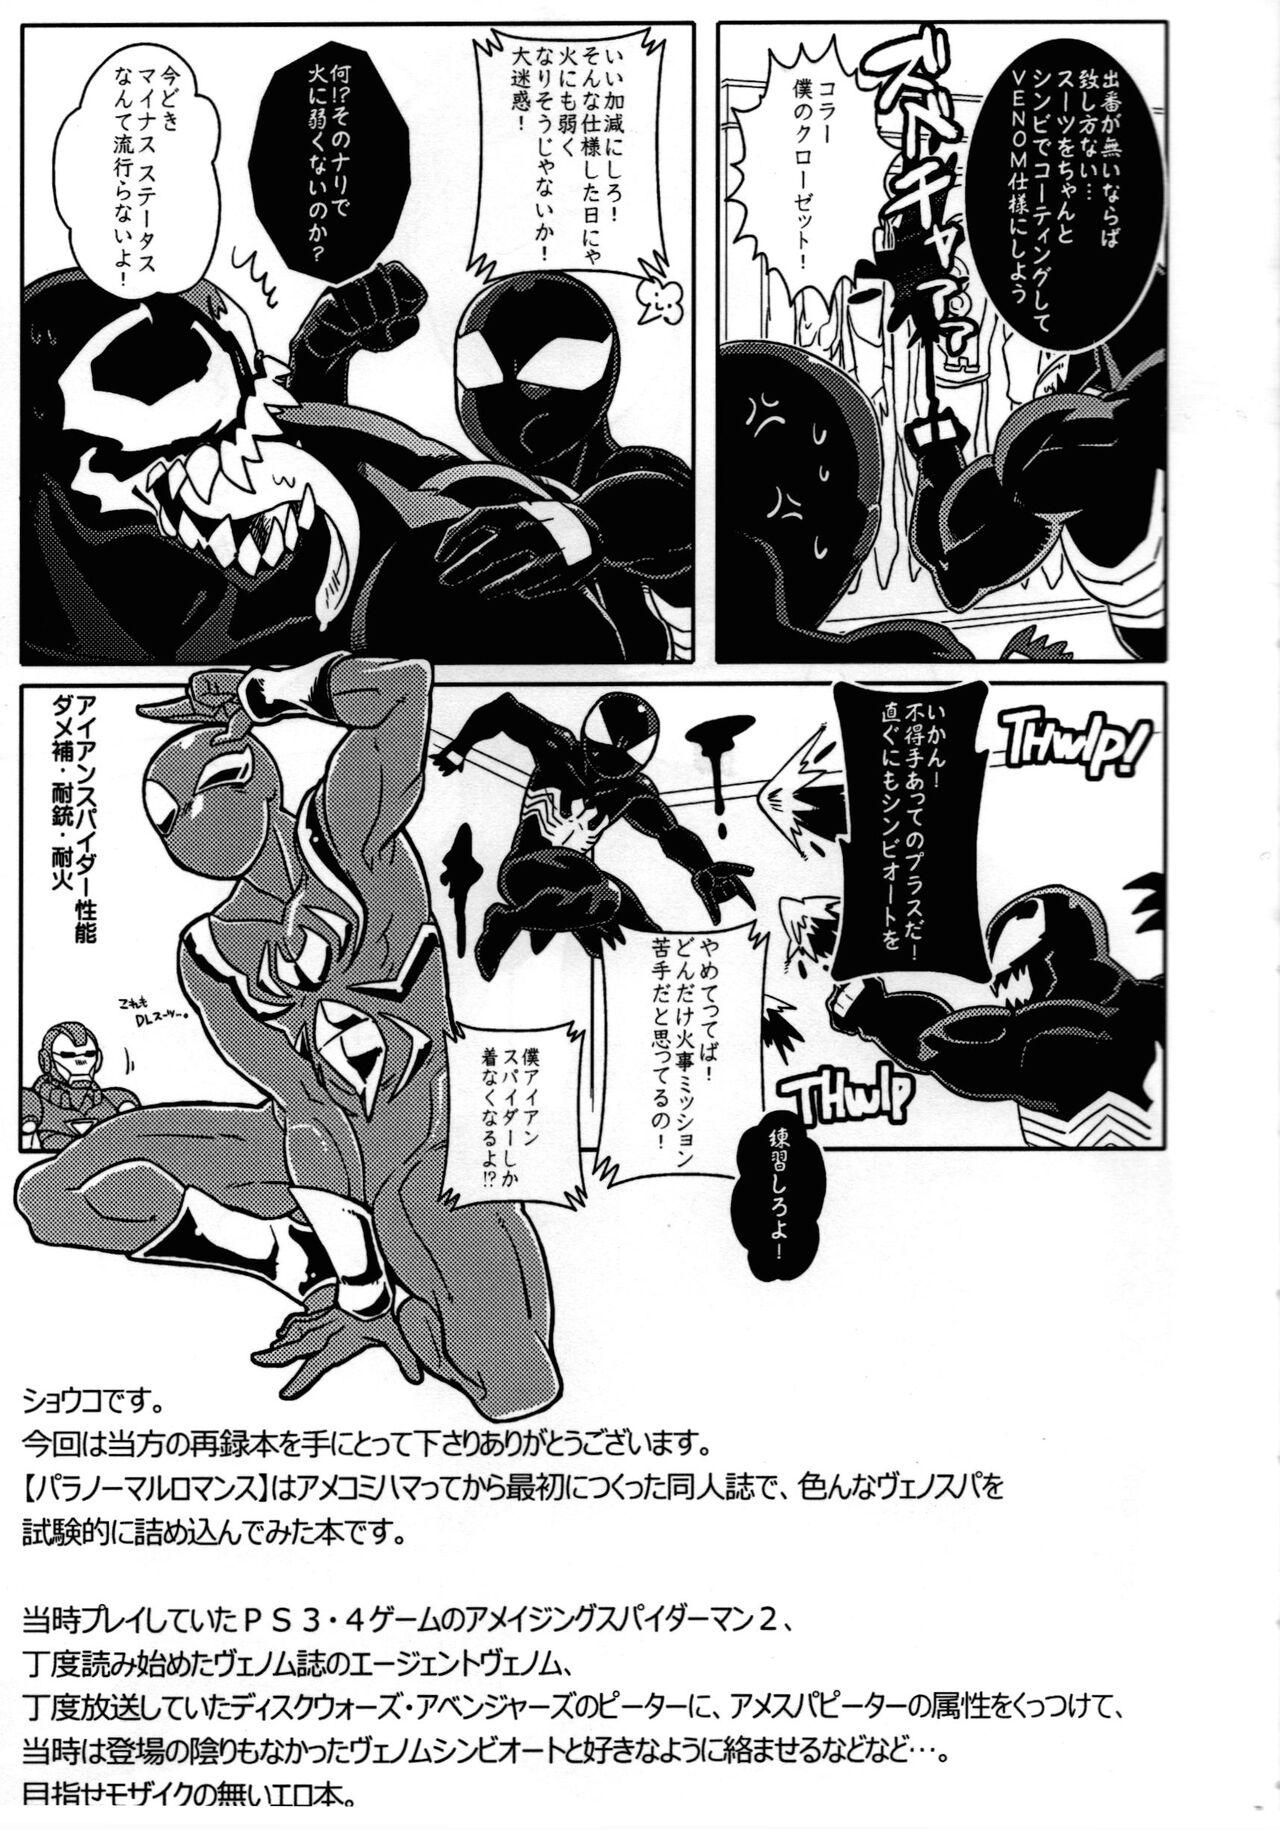 Arab Spider‐Man REMIX - Spider man Softcore - Page 7